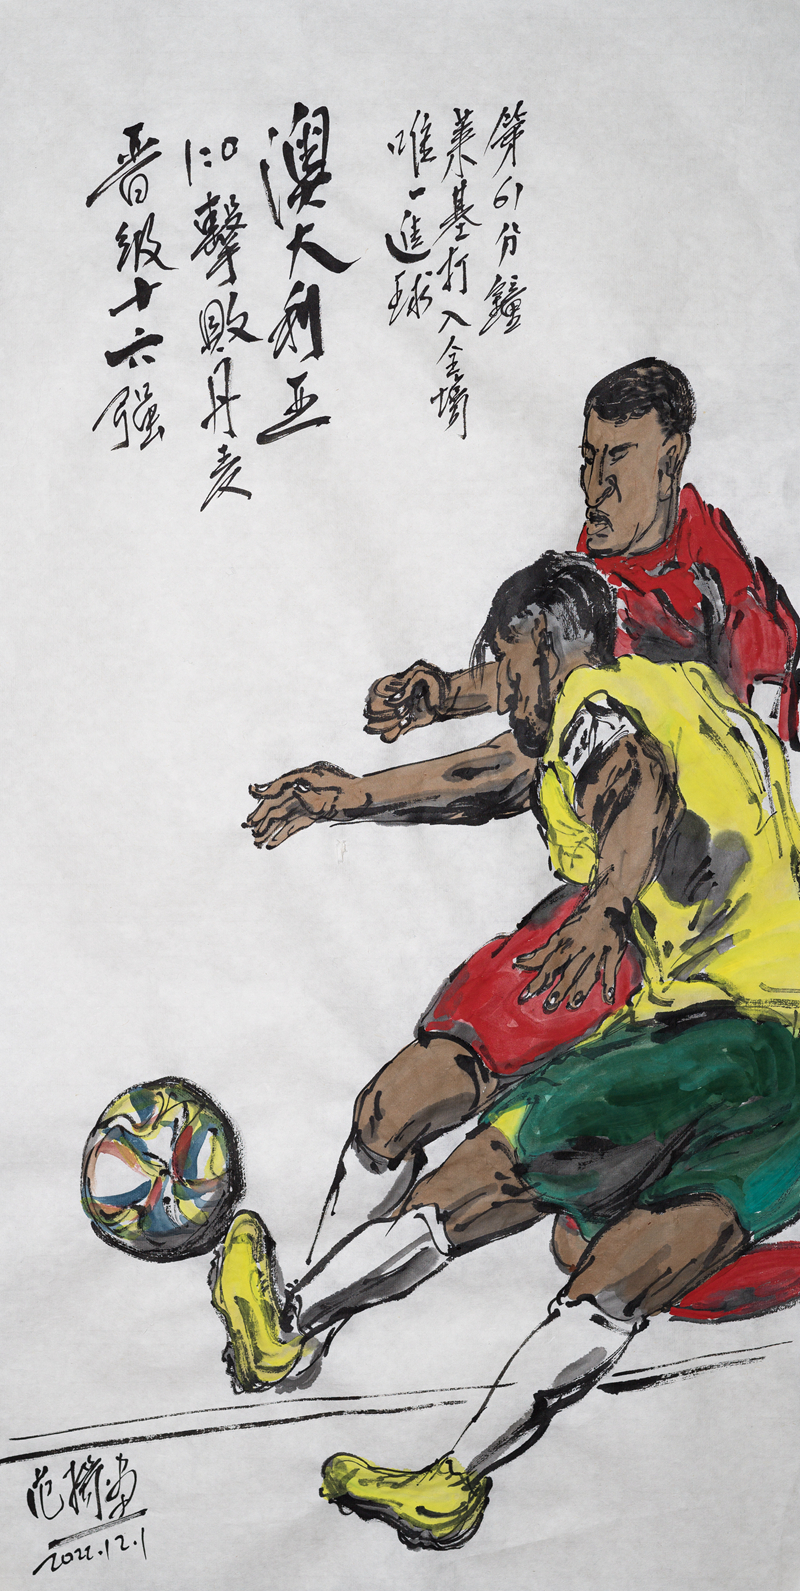 潮起潮落总关情 球入球失动人心——著名画家范扬将世界杯难忘瞬间描绘于方寸之间